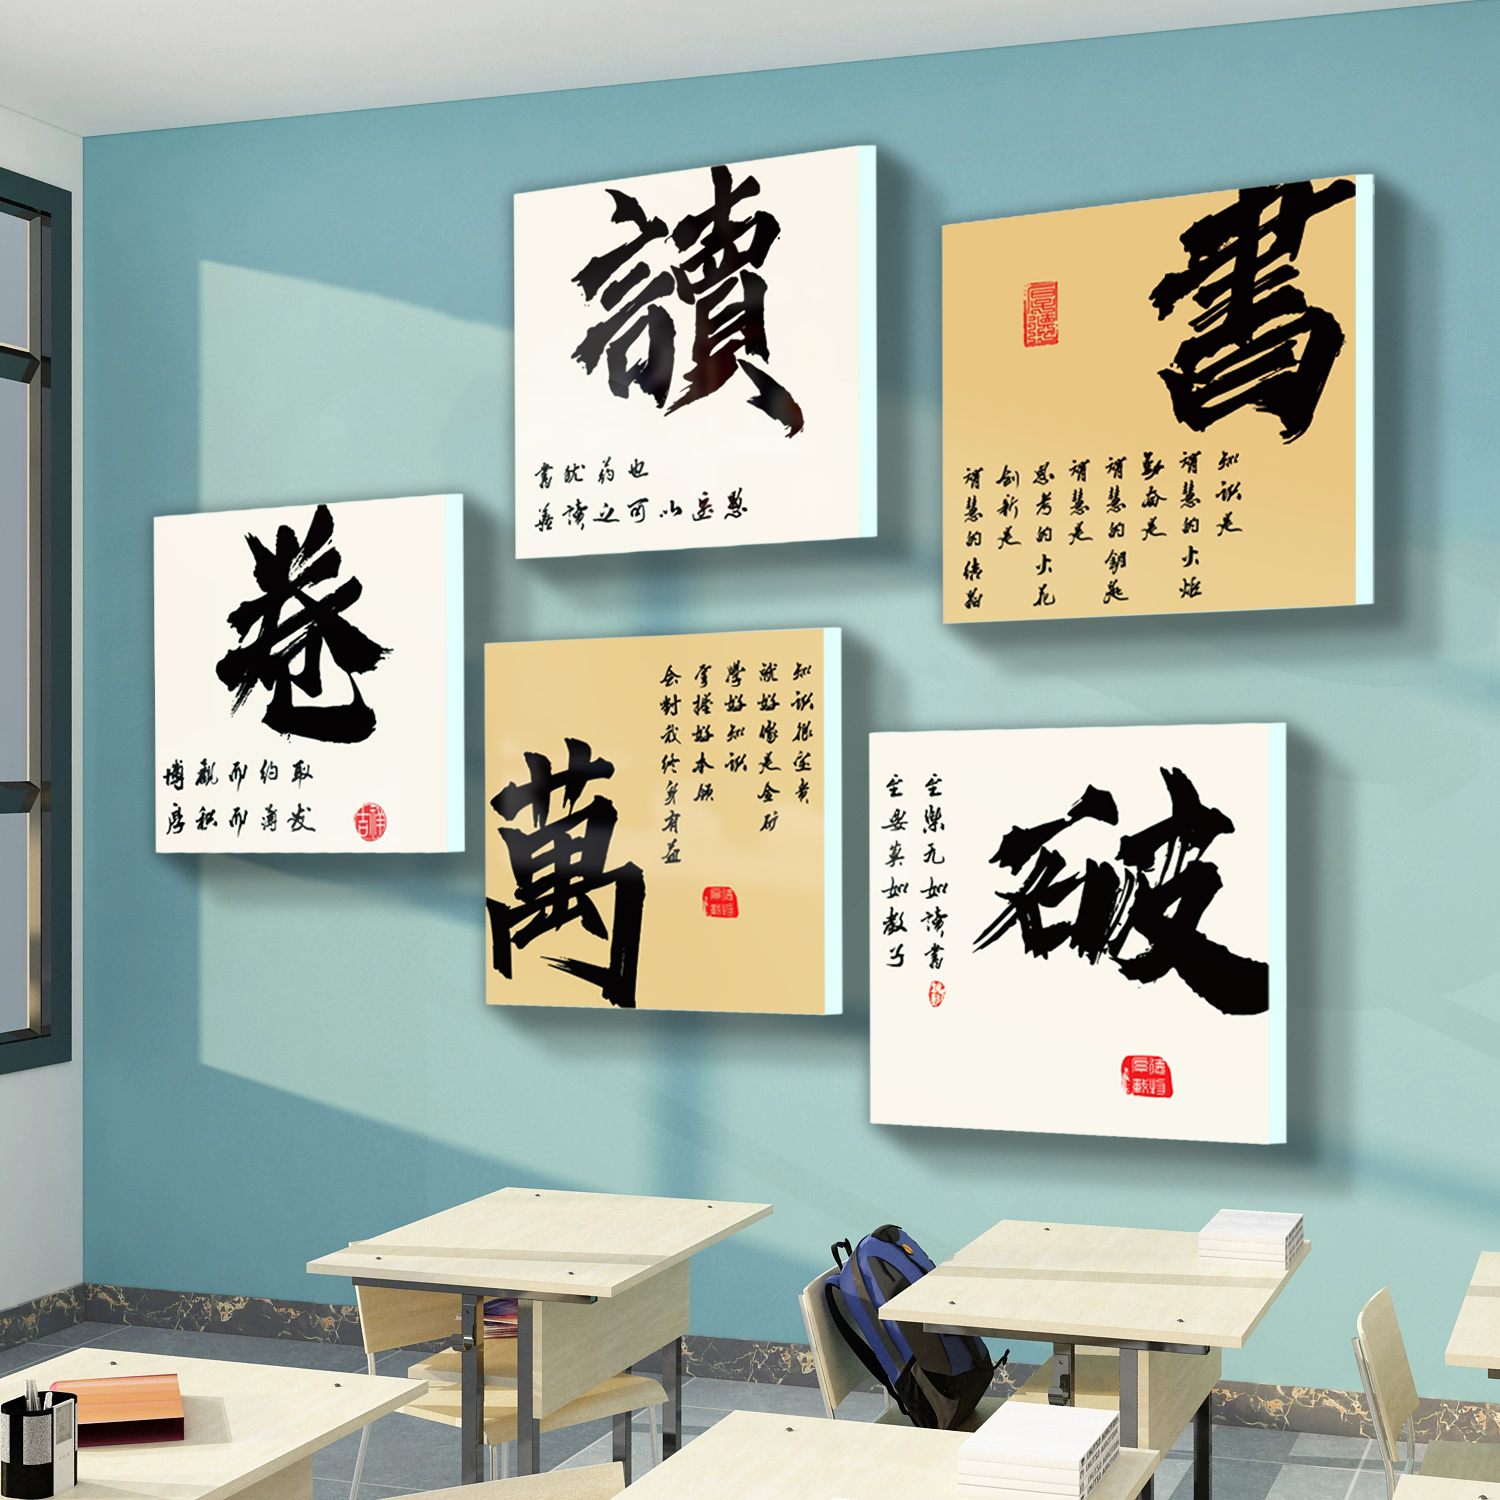 教室布置装饰班级文化墙贴教育托管培训机构励志标语黑板报自习室